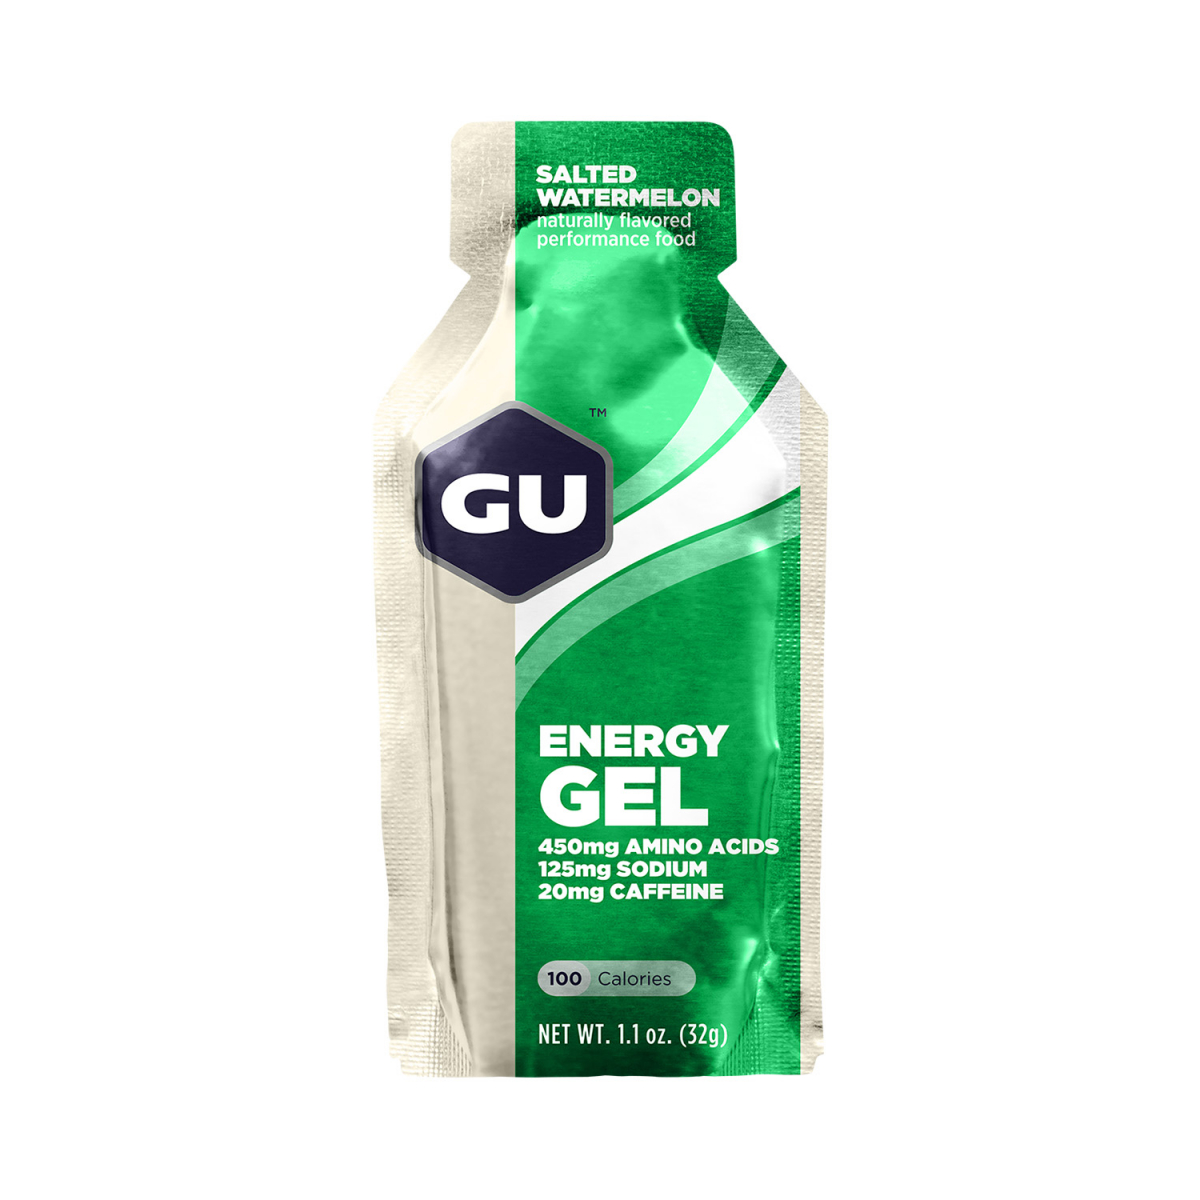 GU - ENERGY GEL - SALTED WATERMELON (20 MG CAFFEINE)